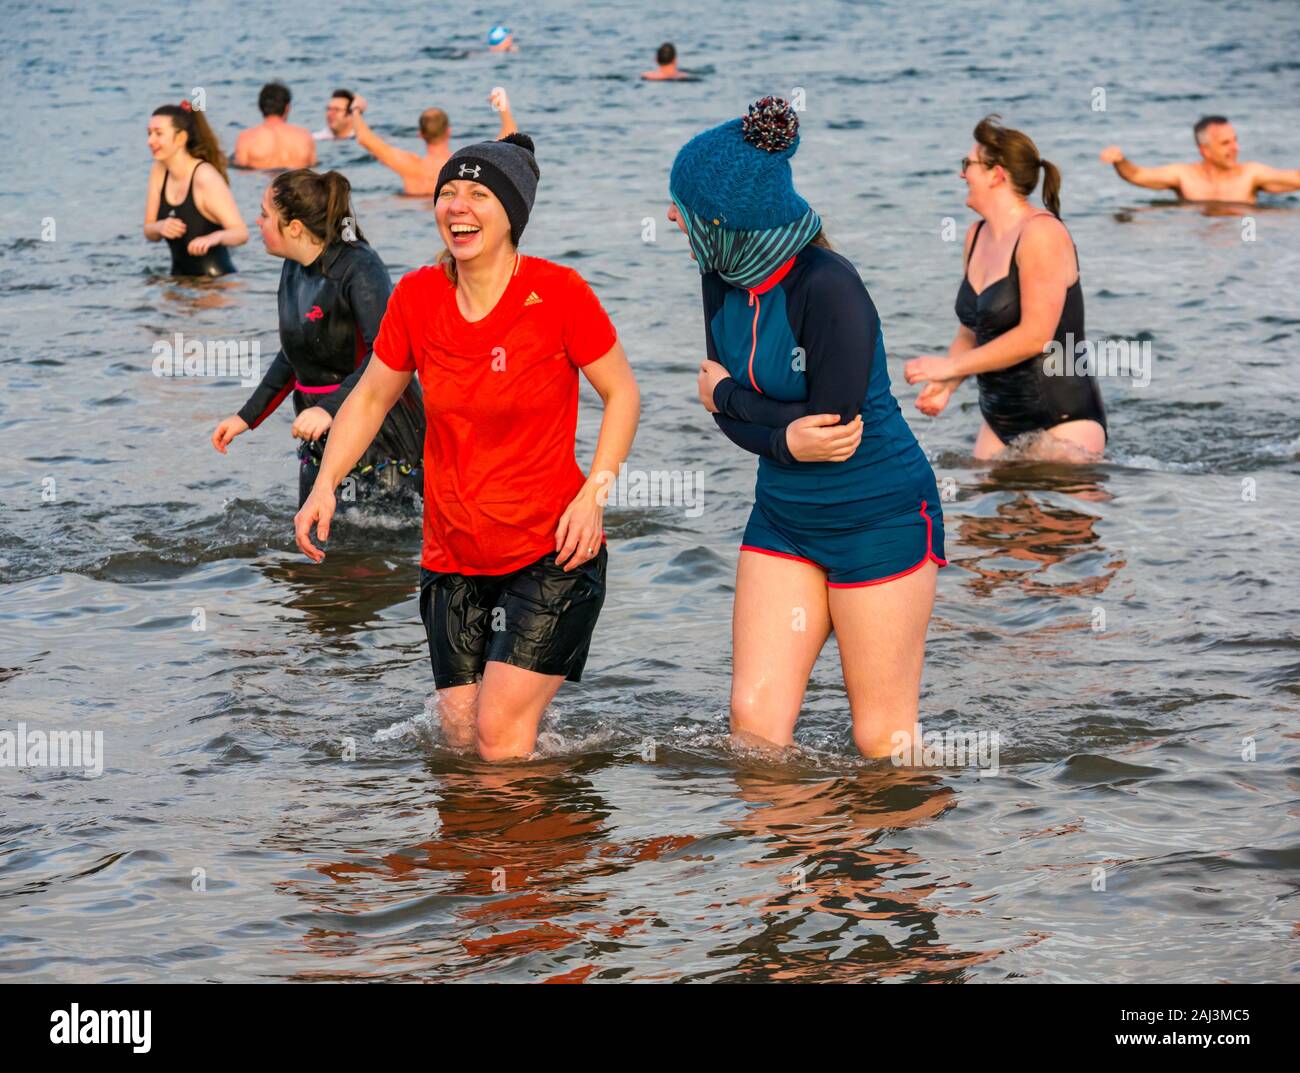 Die Menschen im Meer für 2020 das Neue Jahr Loony Dook oder Dip mit zwei junge Frauen lachen, North Berwick, East Lothian, Schottland, Großbritannien Stockfoto